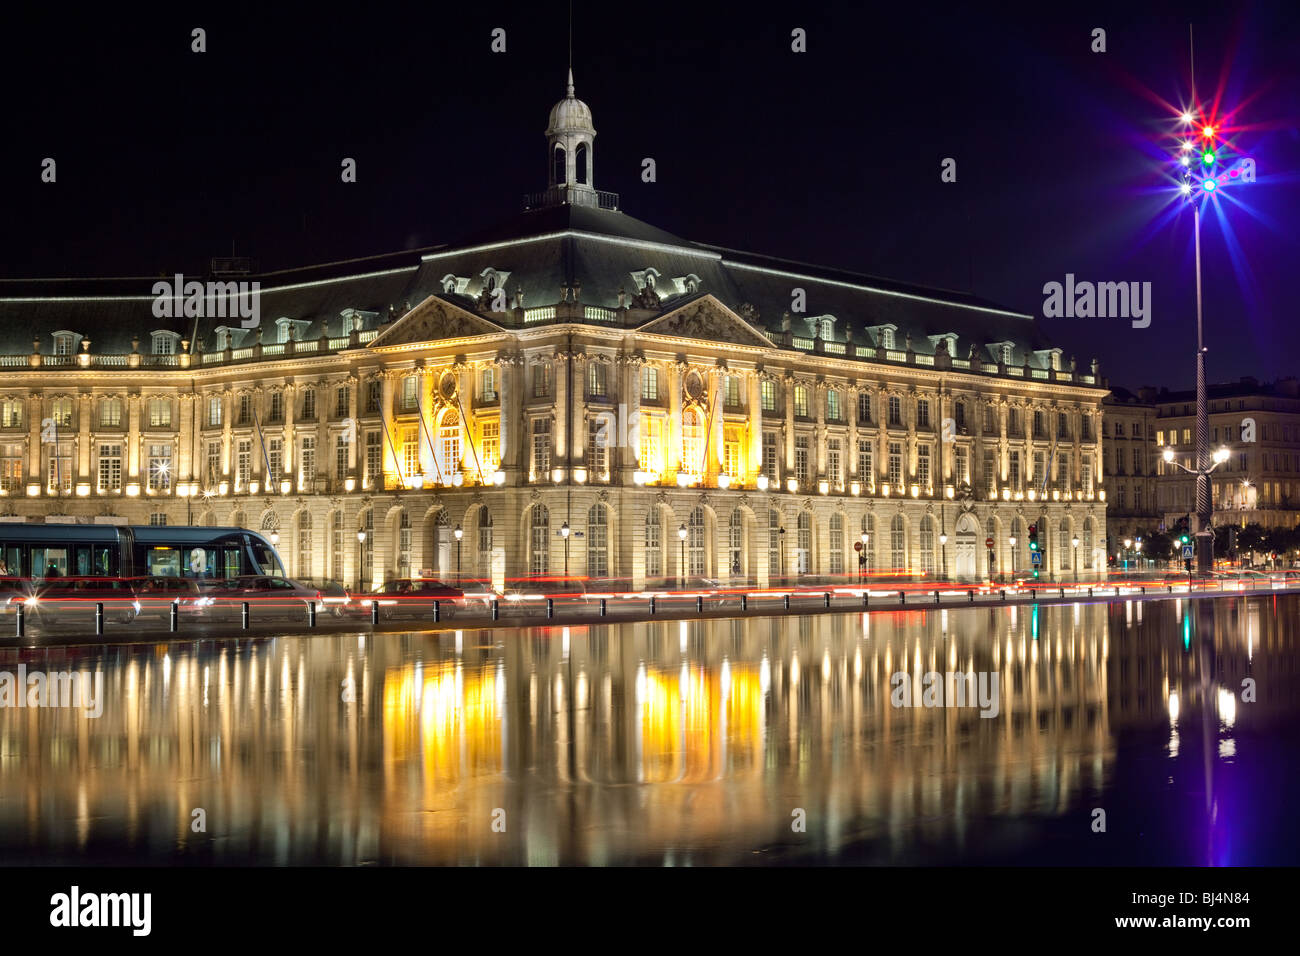 Bordeaux legen De La Bourse alte Börse Denkmal mit Pkw-Verkehr, Straßenbahn und Reflexion auf Wasser-Spiegel. Stockfoto